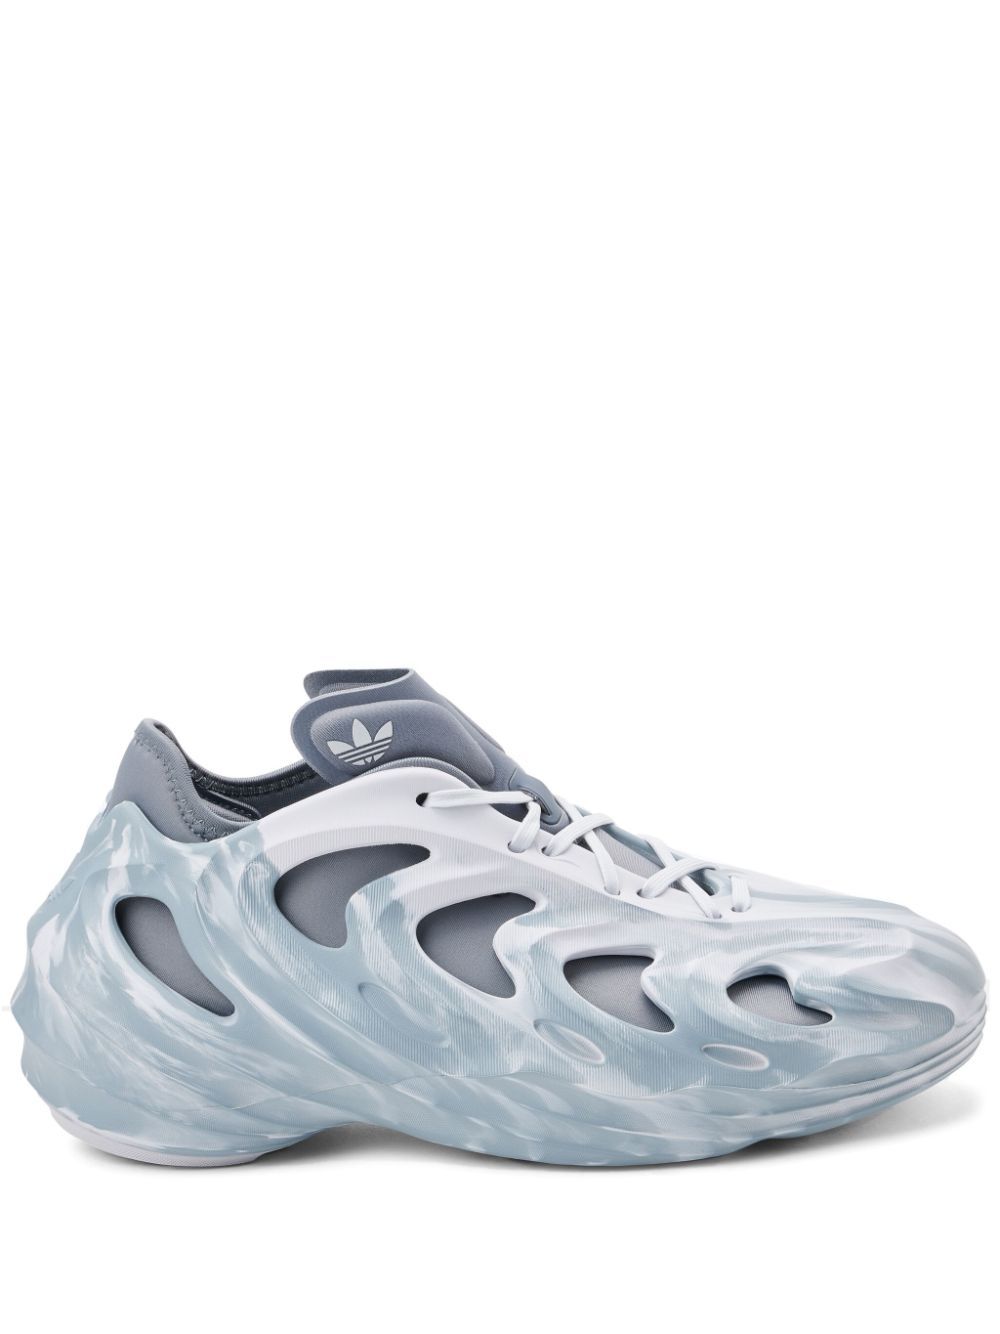 adidas Adifom Q sneakers - Grey von adidas